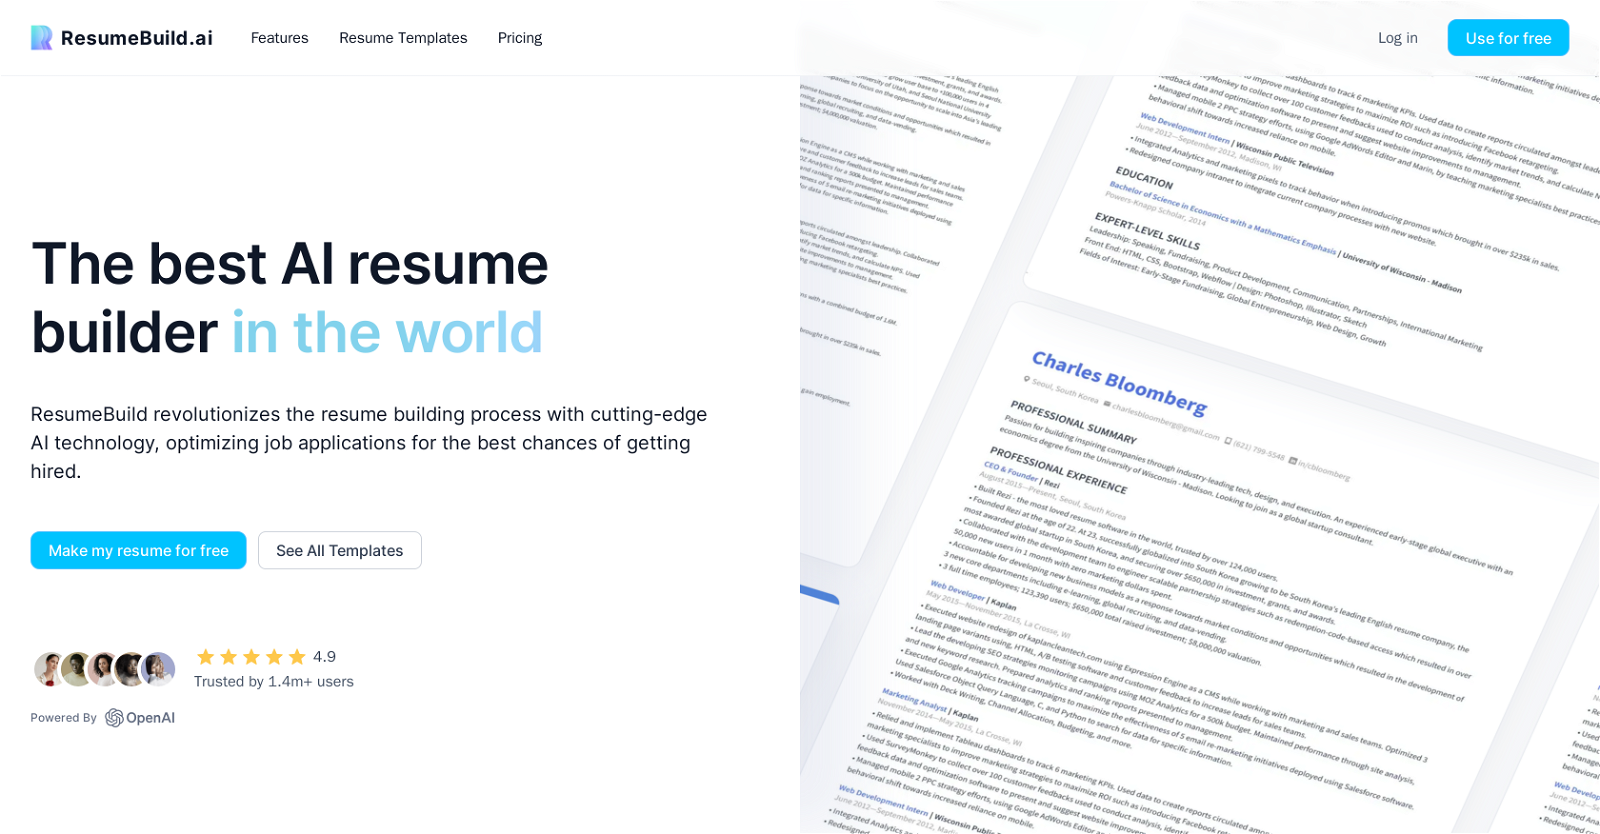 ResumeBuild website